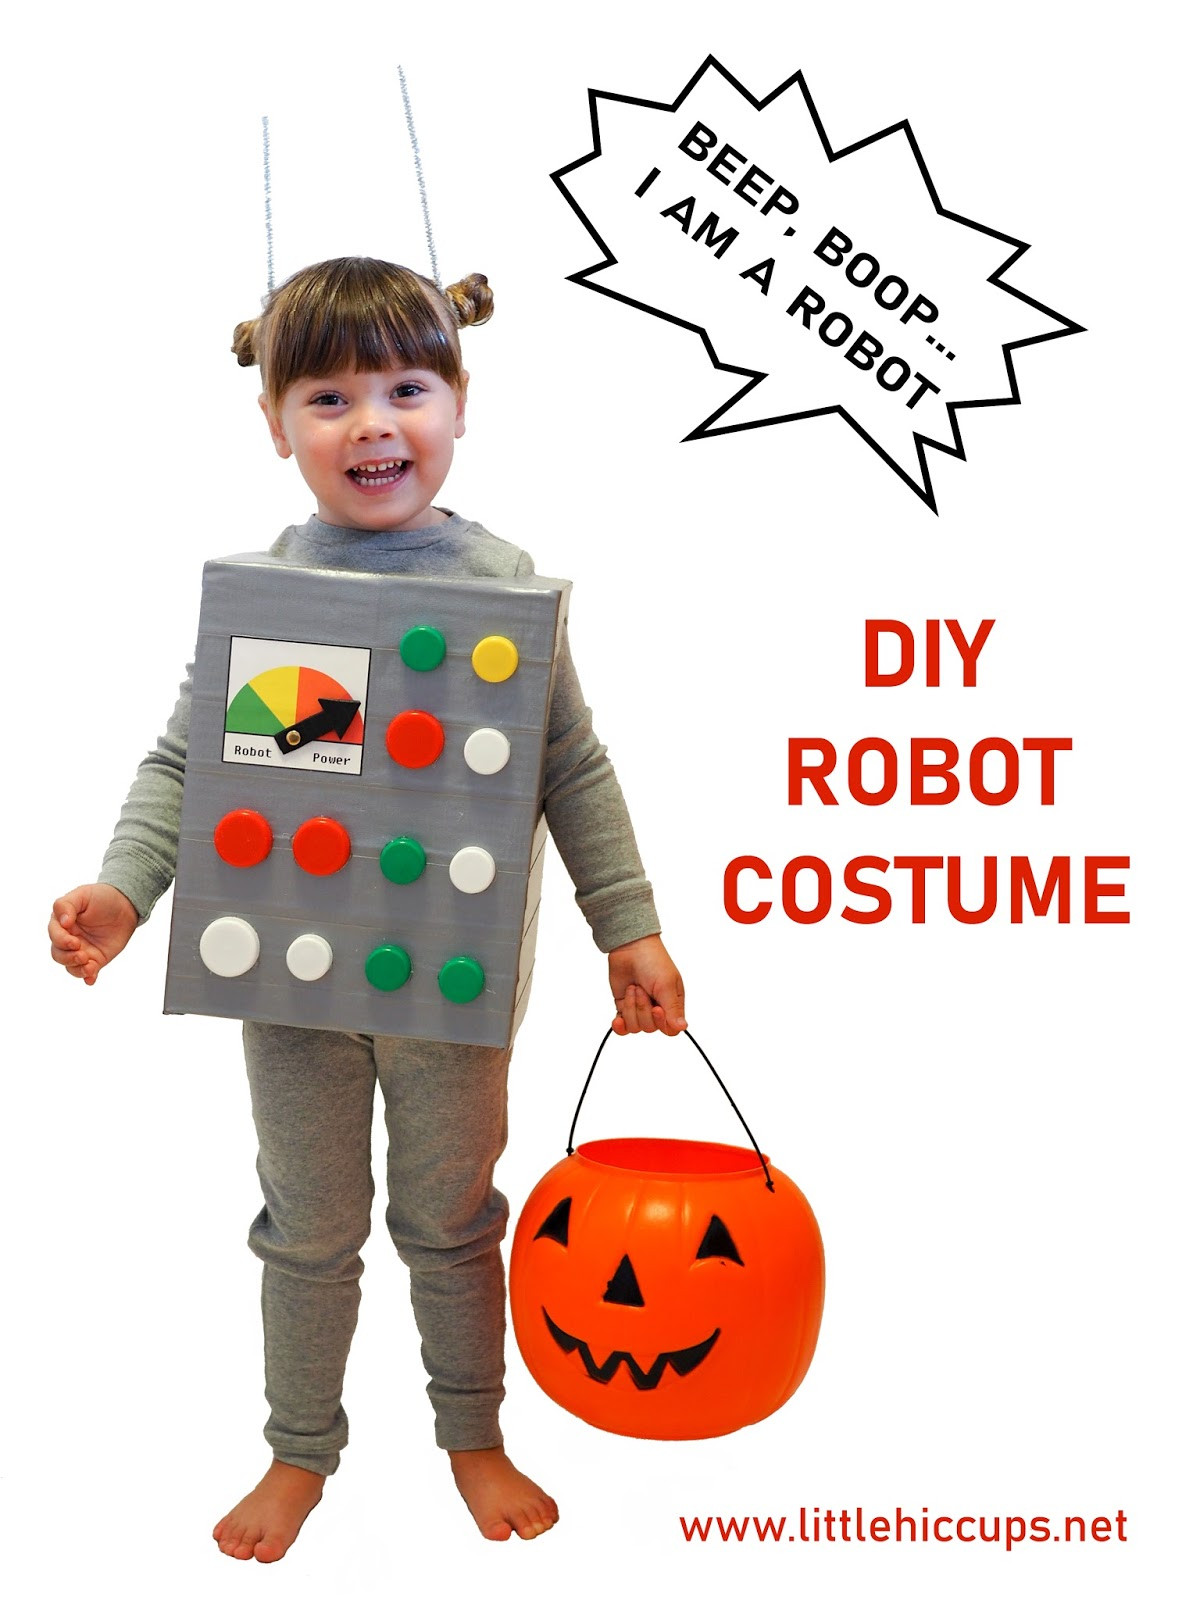 DIY Robot Costume Toddler
 Little Hiccups Last Minute Halloween DIY Robot Costume